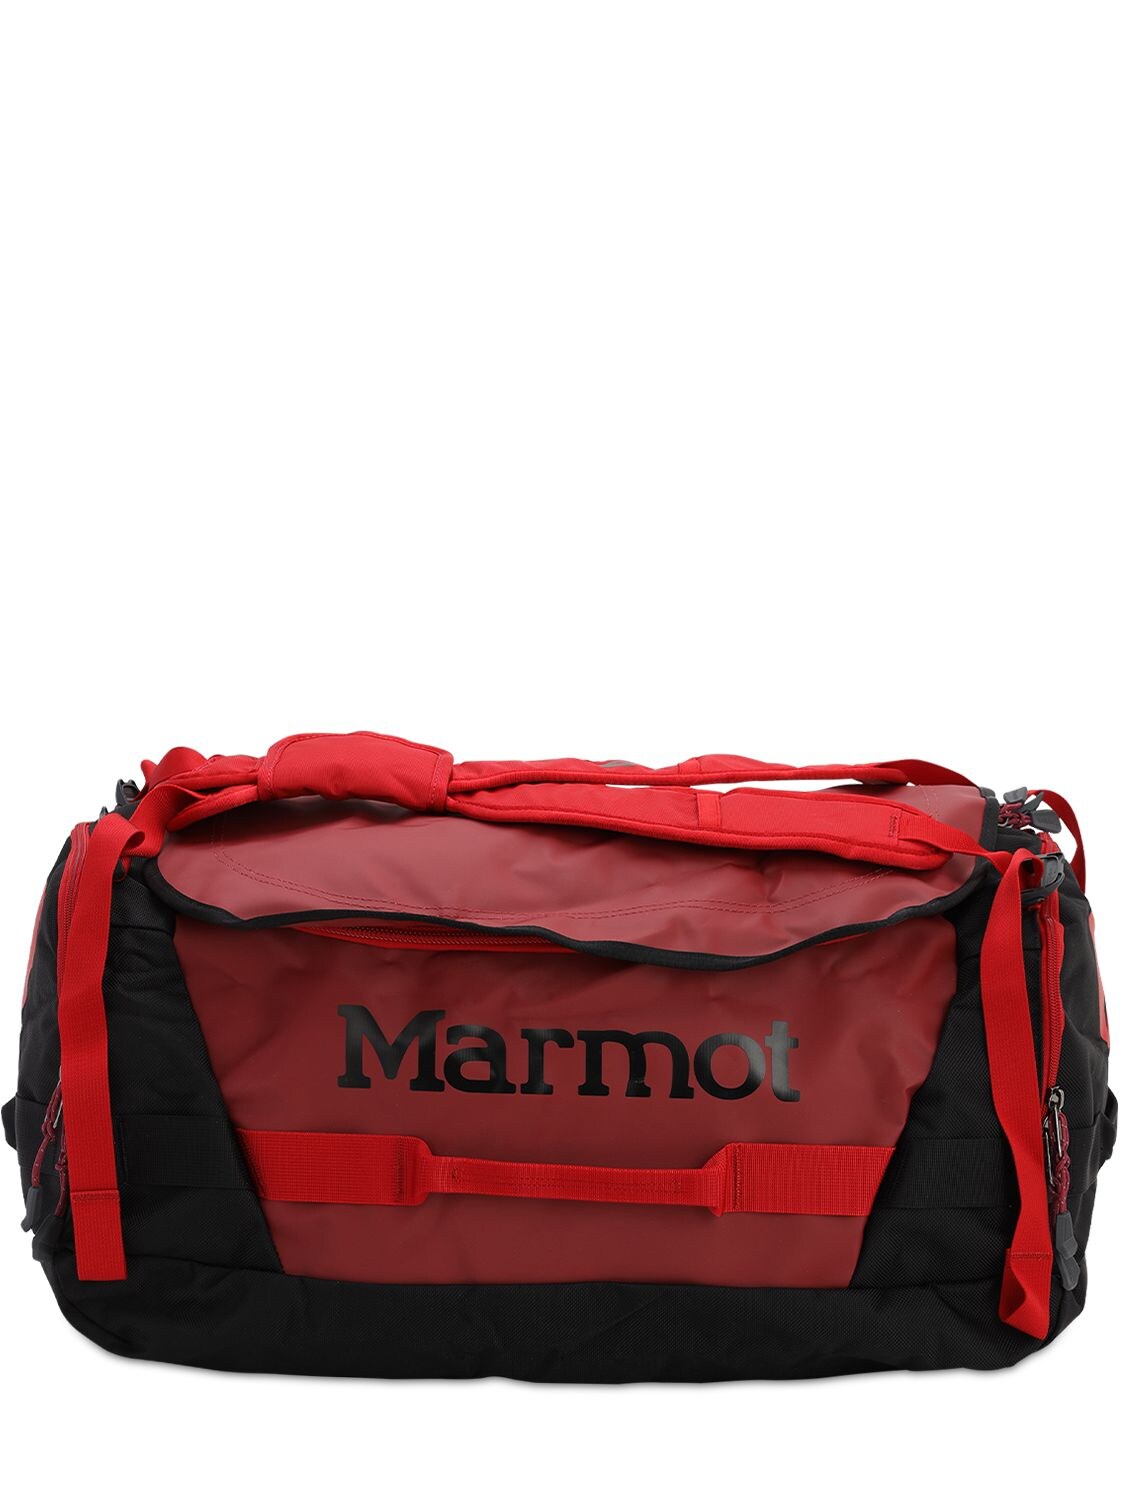 Marmot Medium Long Hauler Duffle Bag In Brick